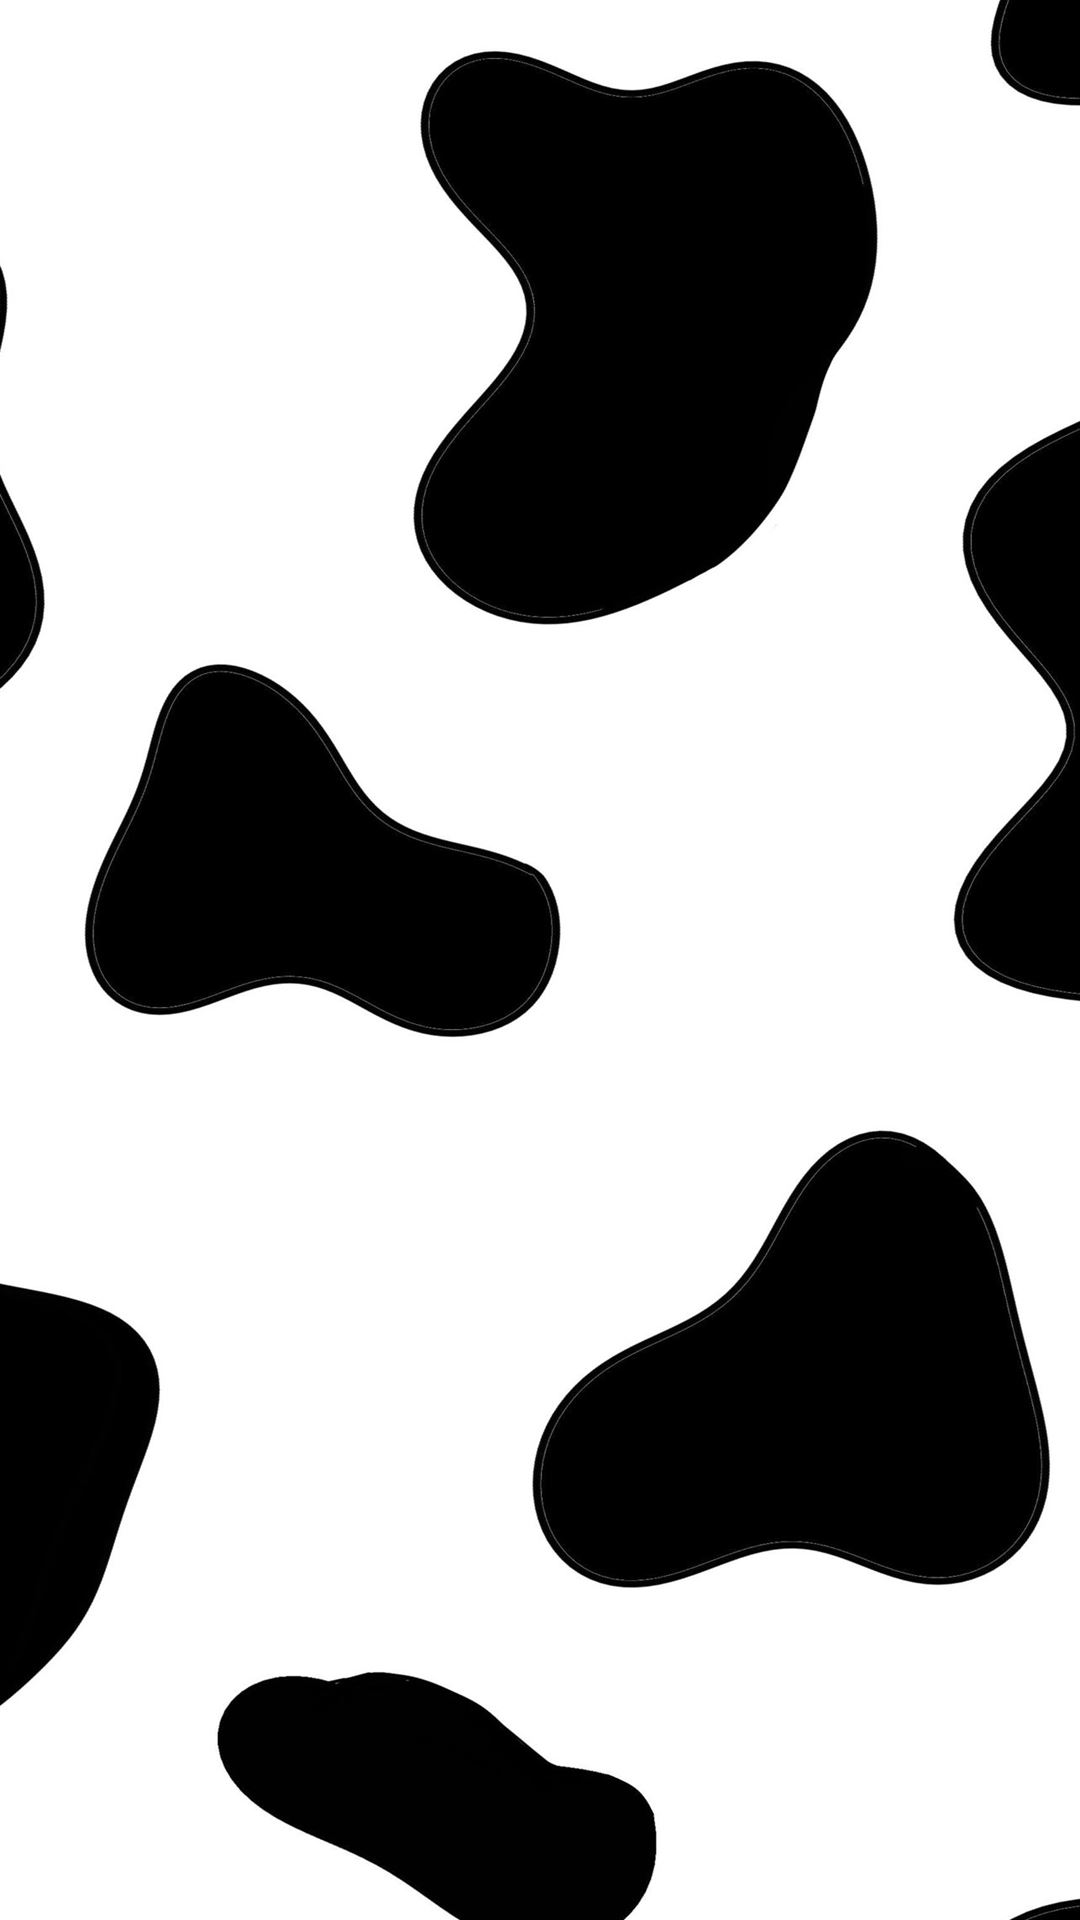 Cow Skin animal texture wallpaper Vector  stock vector 2214918  Crushpixel